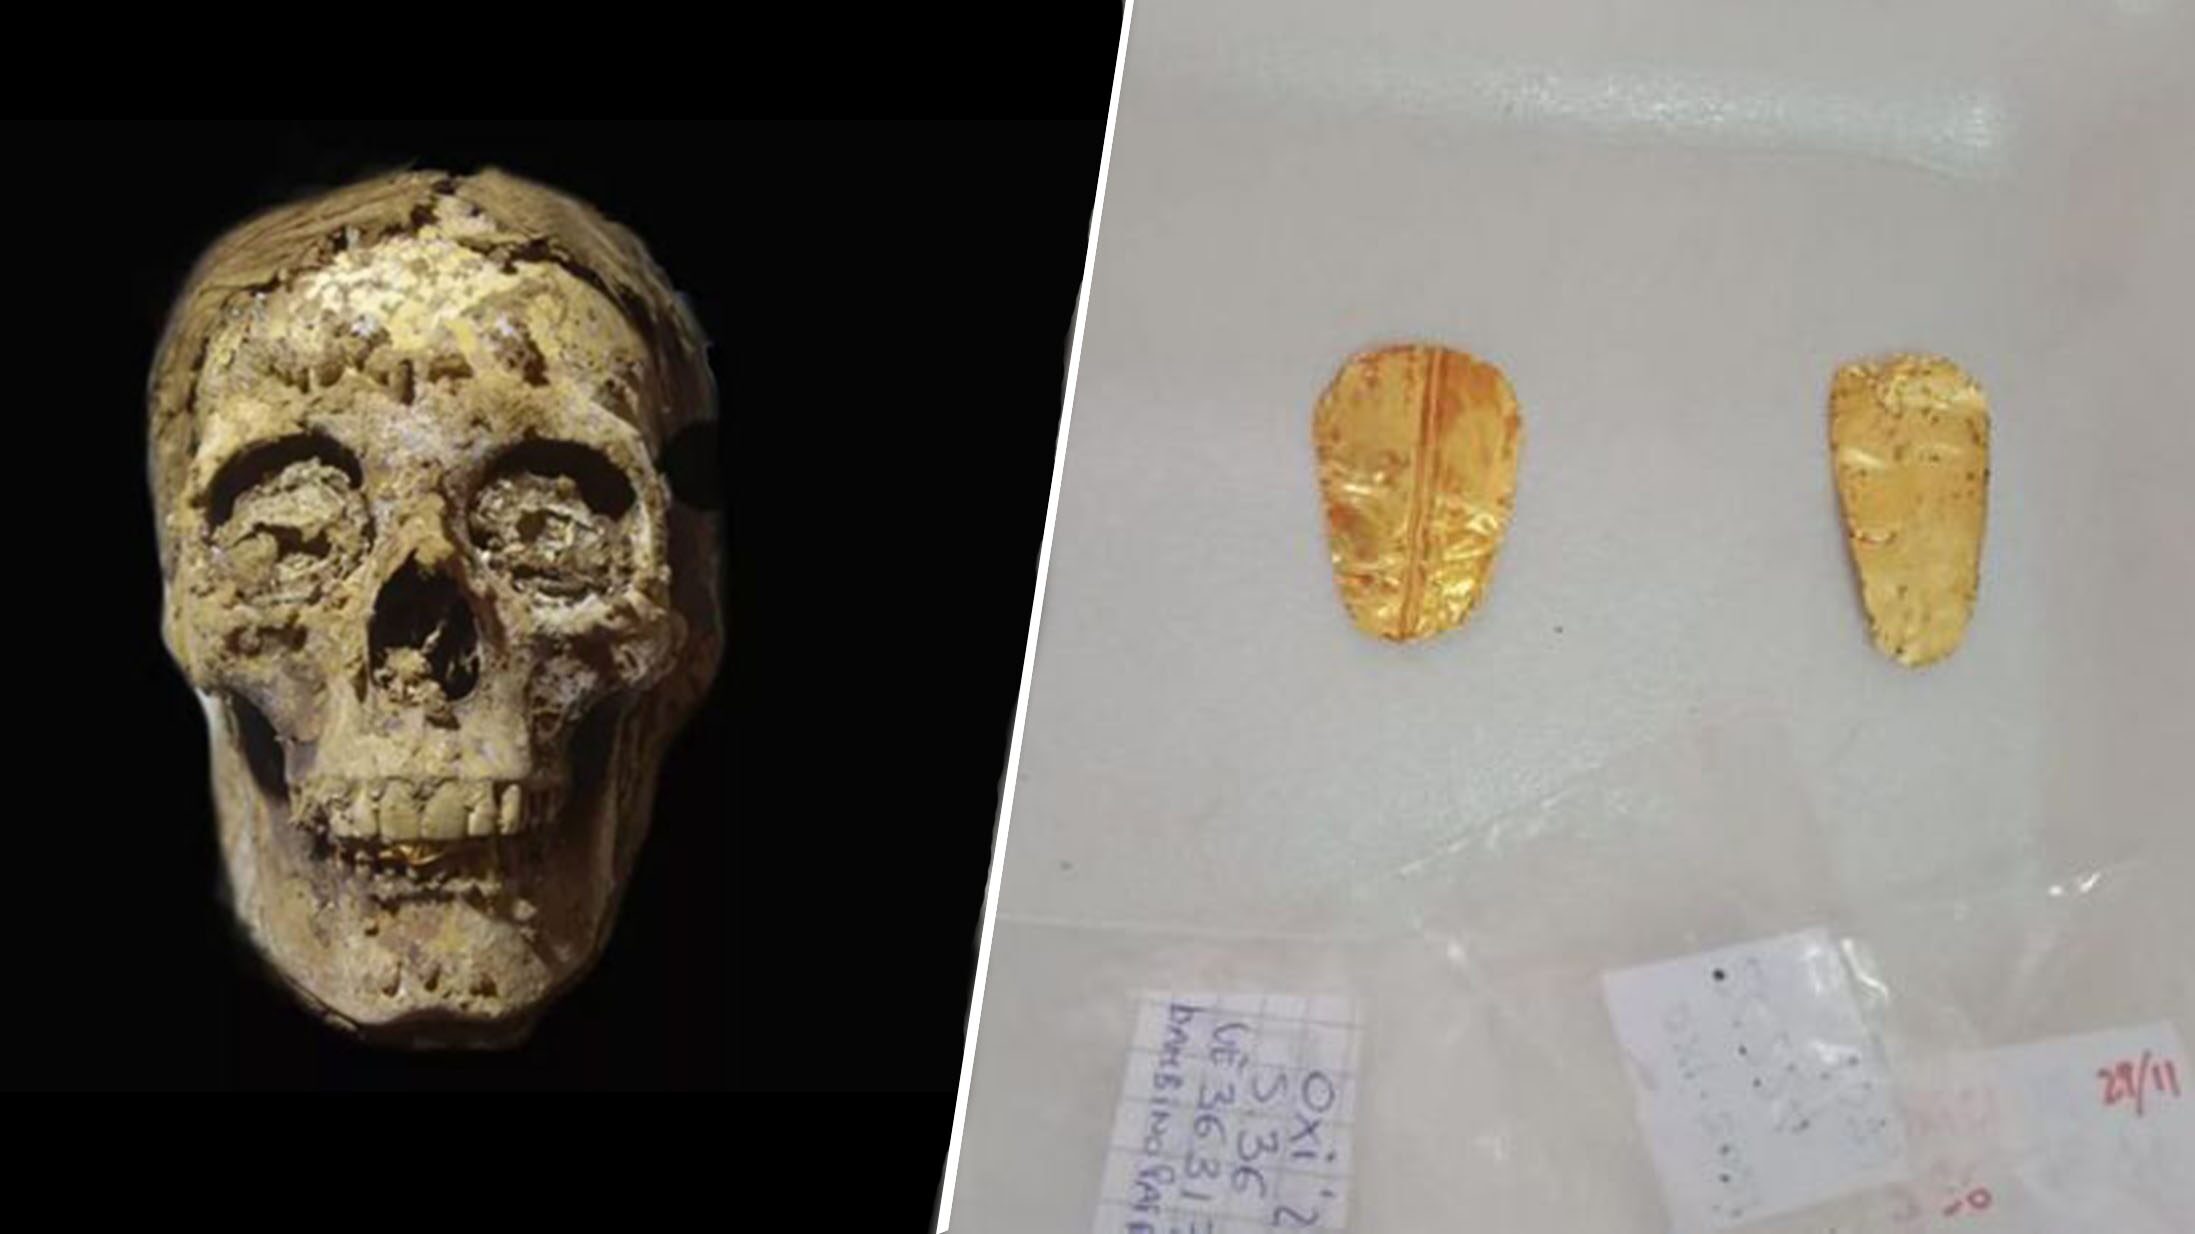 พบมัมมี่อียิปต์ลิ้นทองคำ เพิ่มอีก 3 ร่าง มีทั้งชาย หญิง และเด็ก อายุเก่าแก่ 2,500 ปี